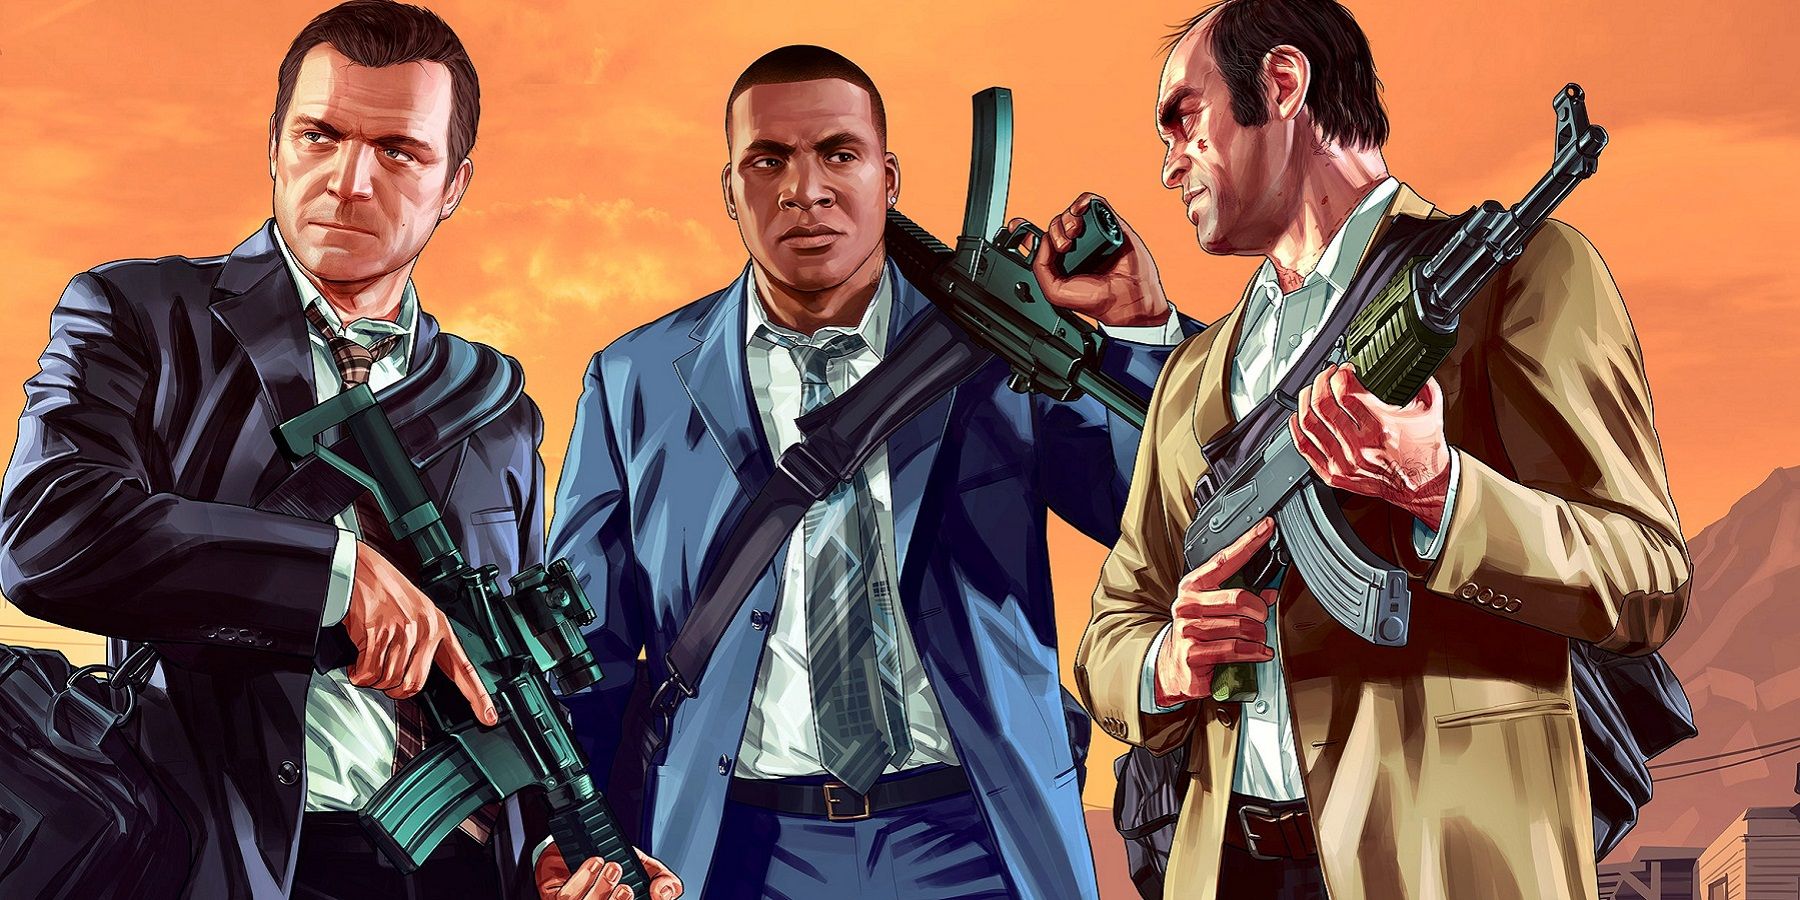 როგორც ჩანს, Rockstar დაემშვიდობა Grand Theft Auto 5 -ს